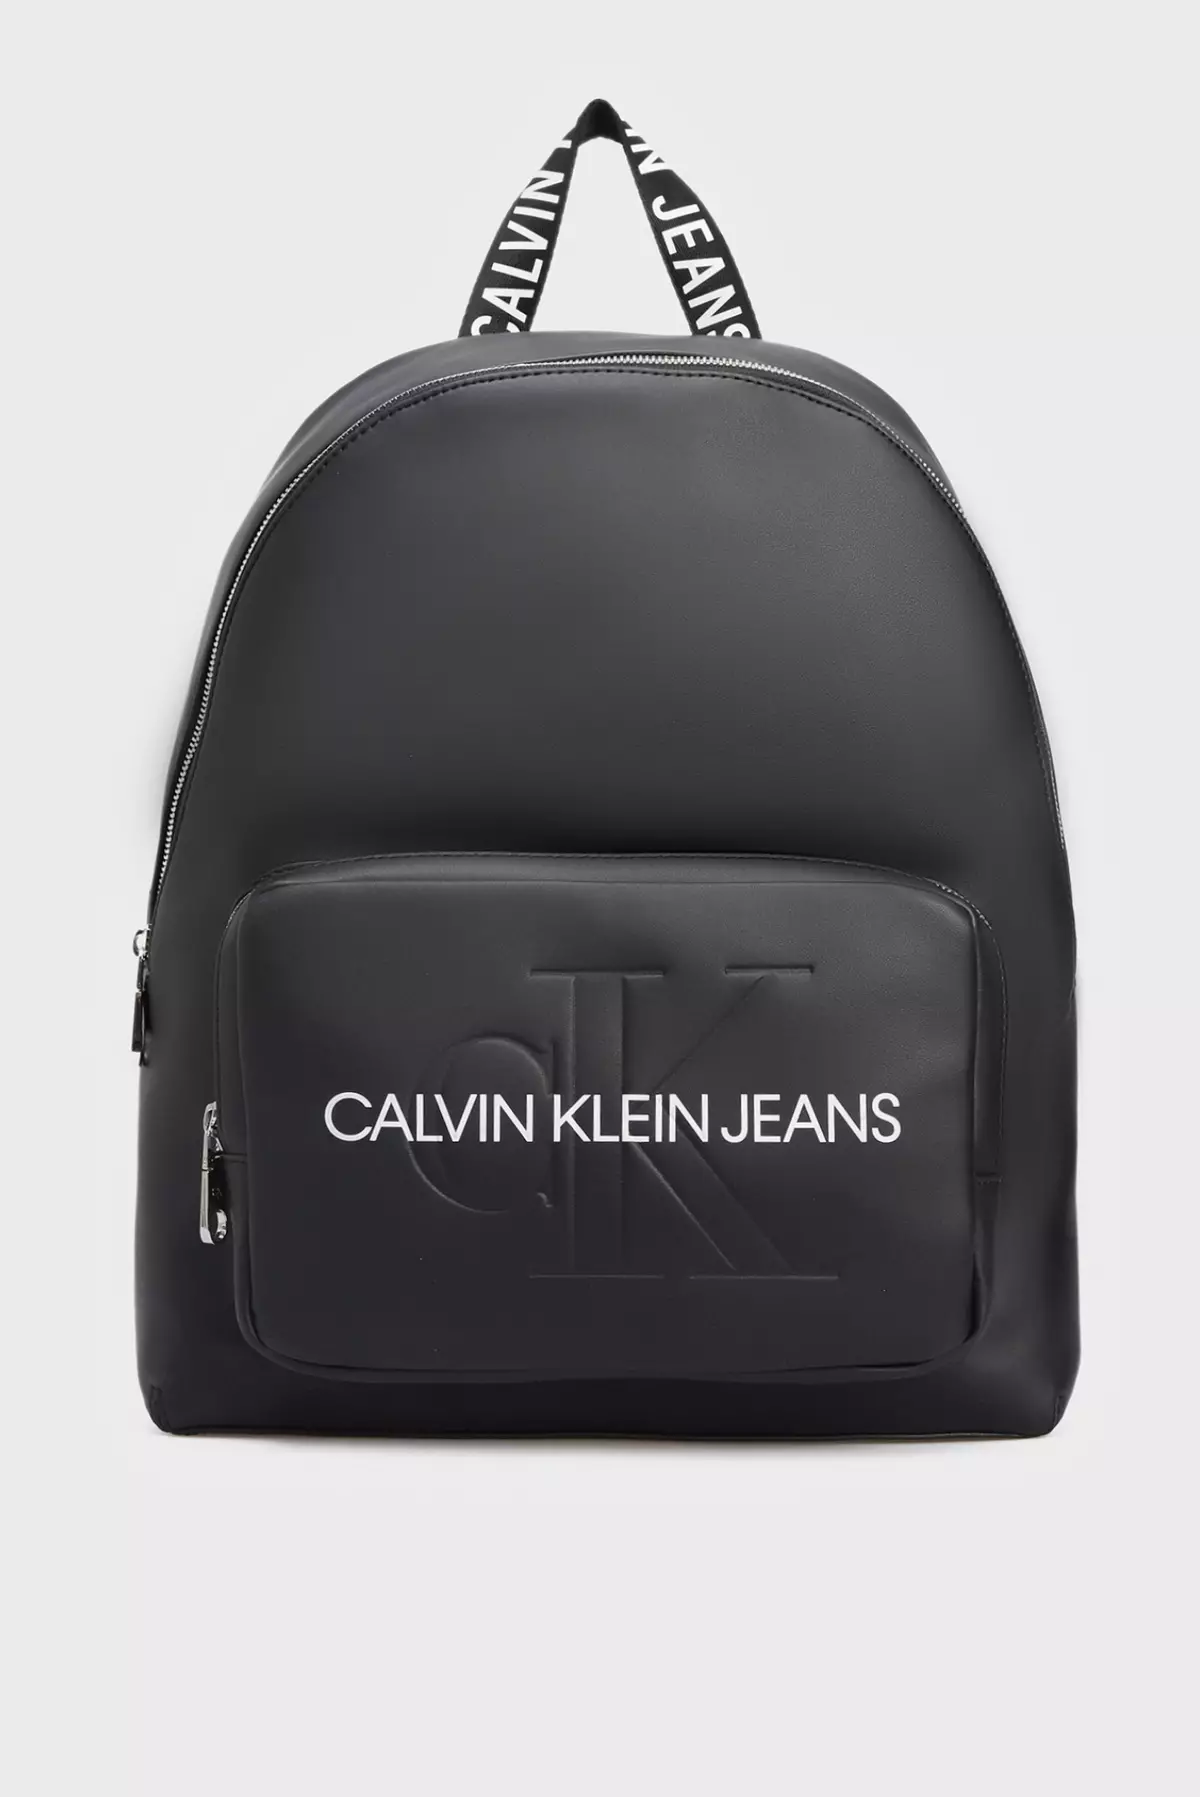 Calvin Klein Mochilas: Preto Fêmea e Masculino, Vermelho de Couro, Branco, Amarelo com Monogramm e Outros Sacos de Cores - Mochilas 15401_11